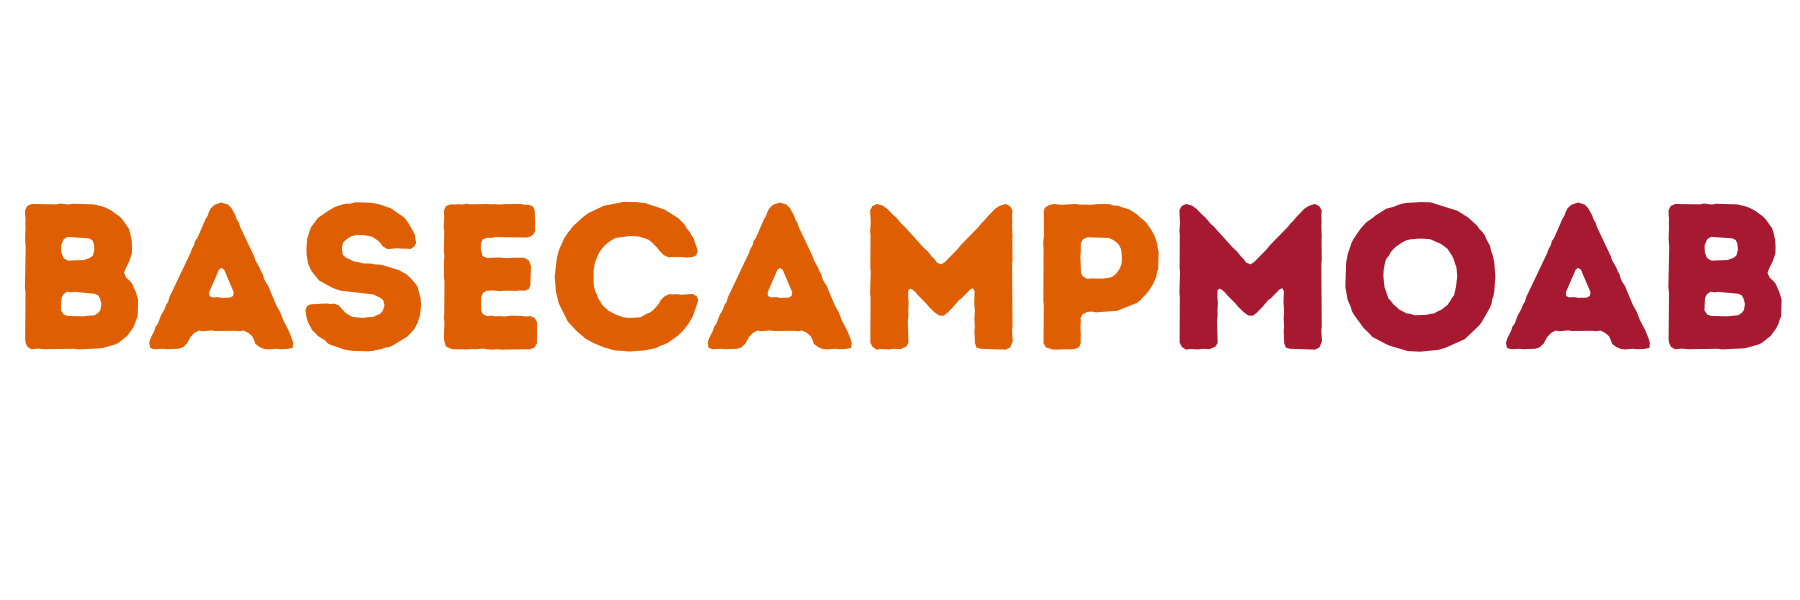 Basecamp Moab 